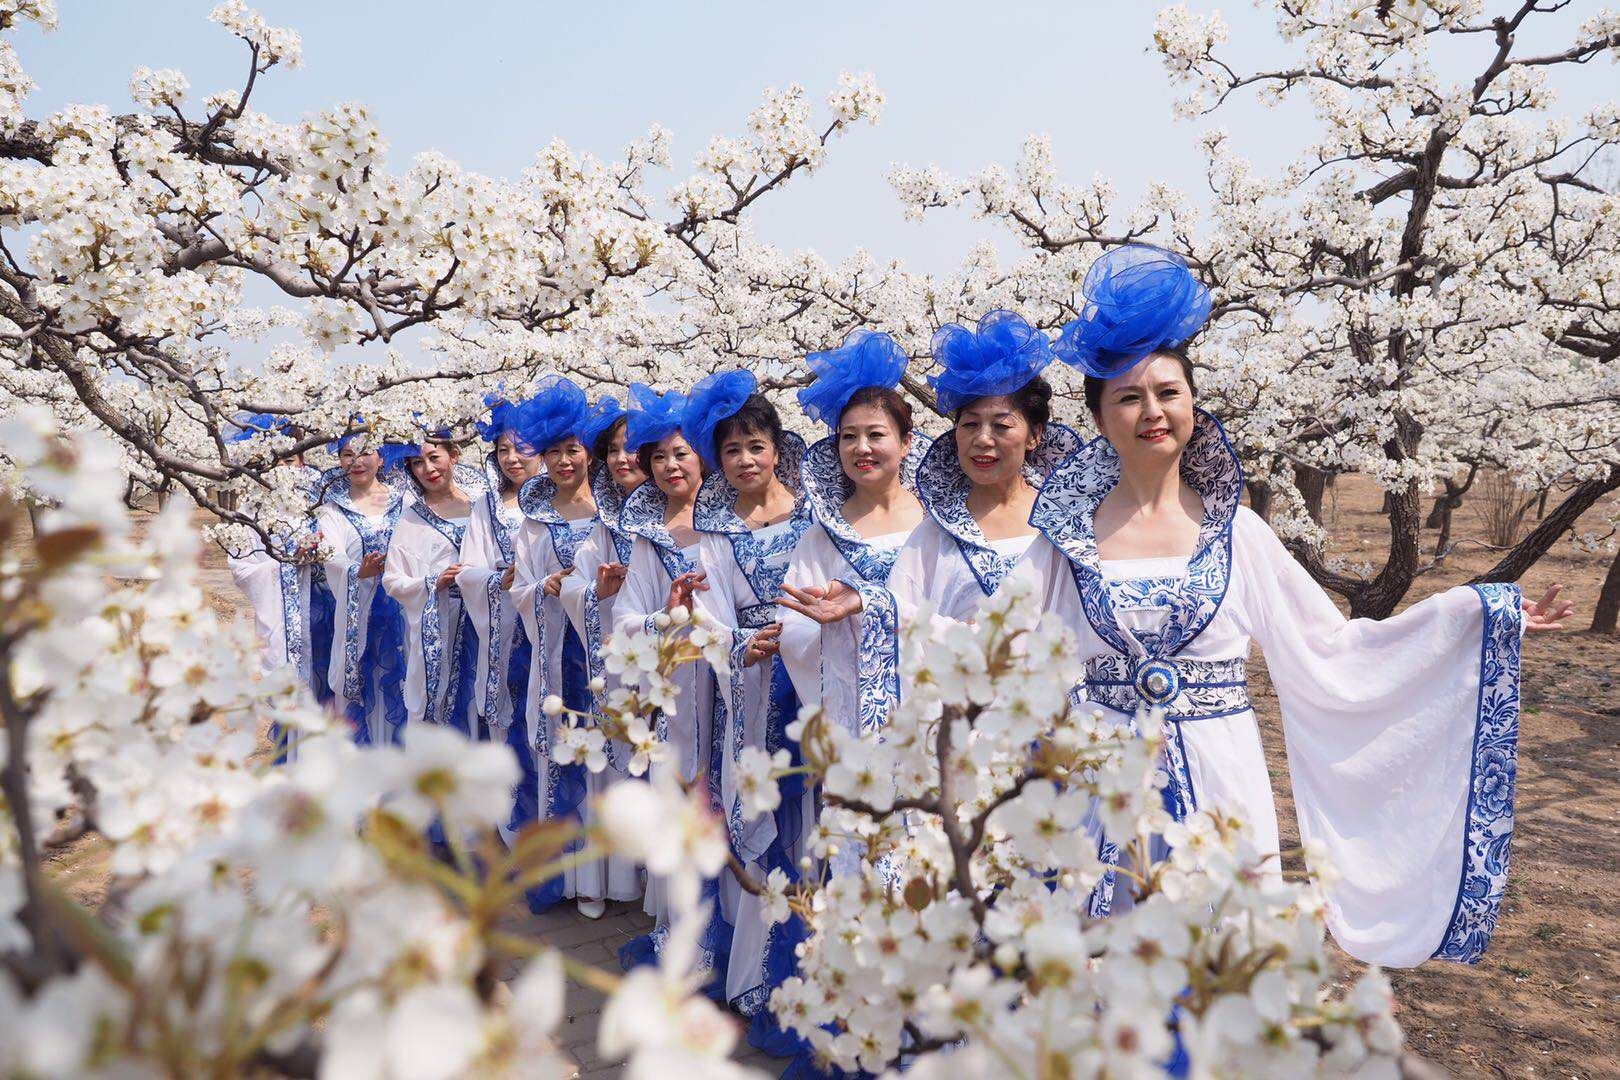 花重北京城 | 北京大兴梨花节开幕 市民可认养百年梨树